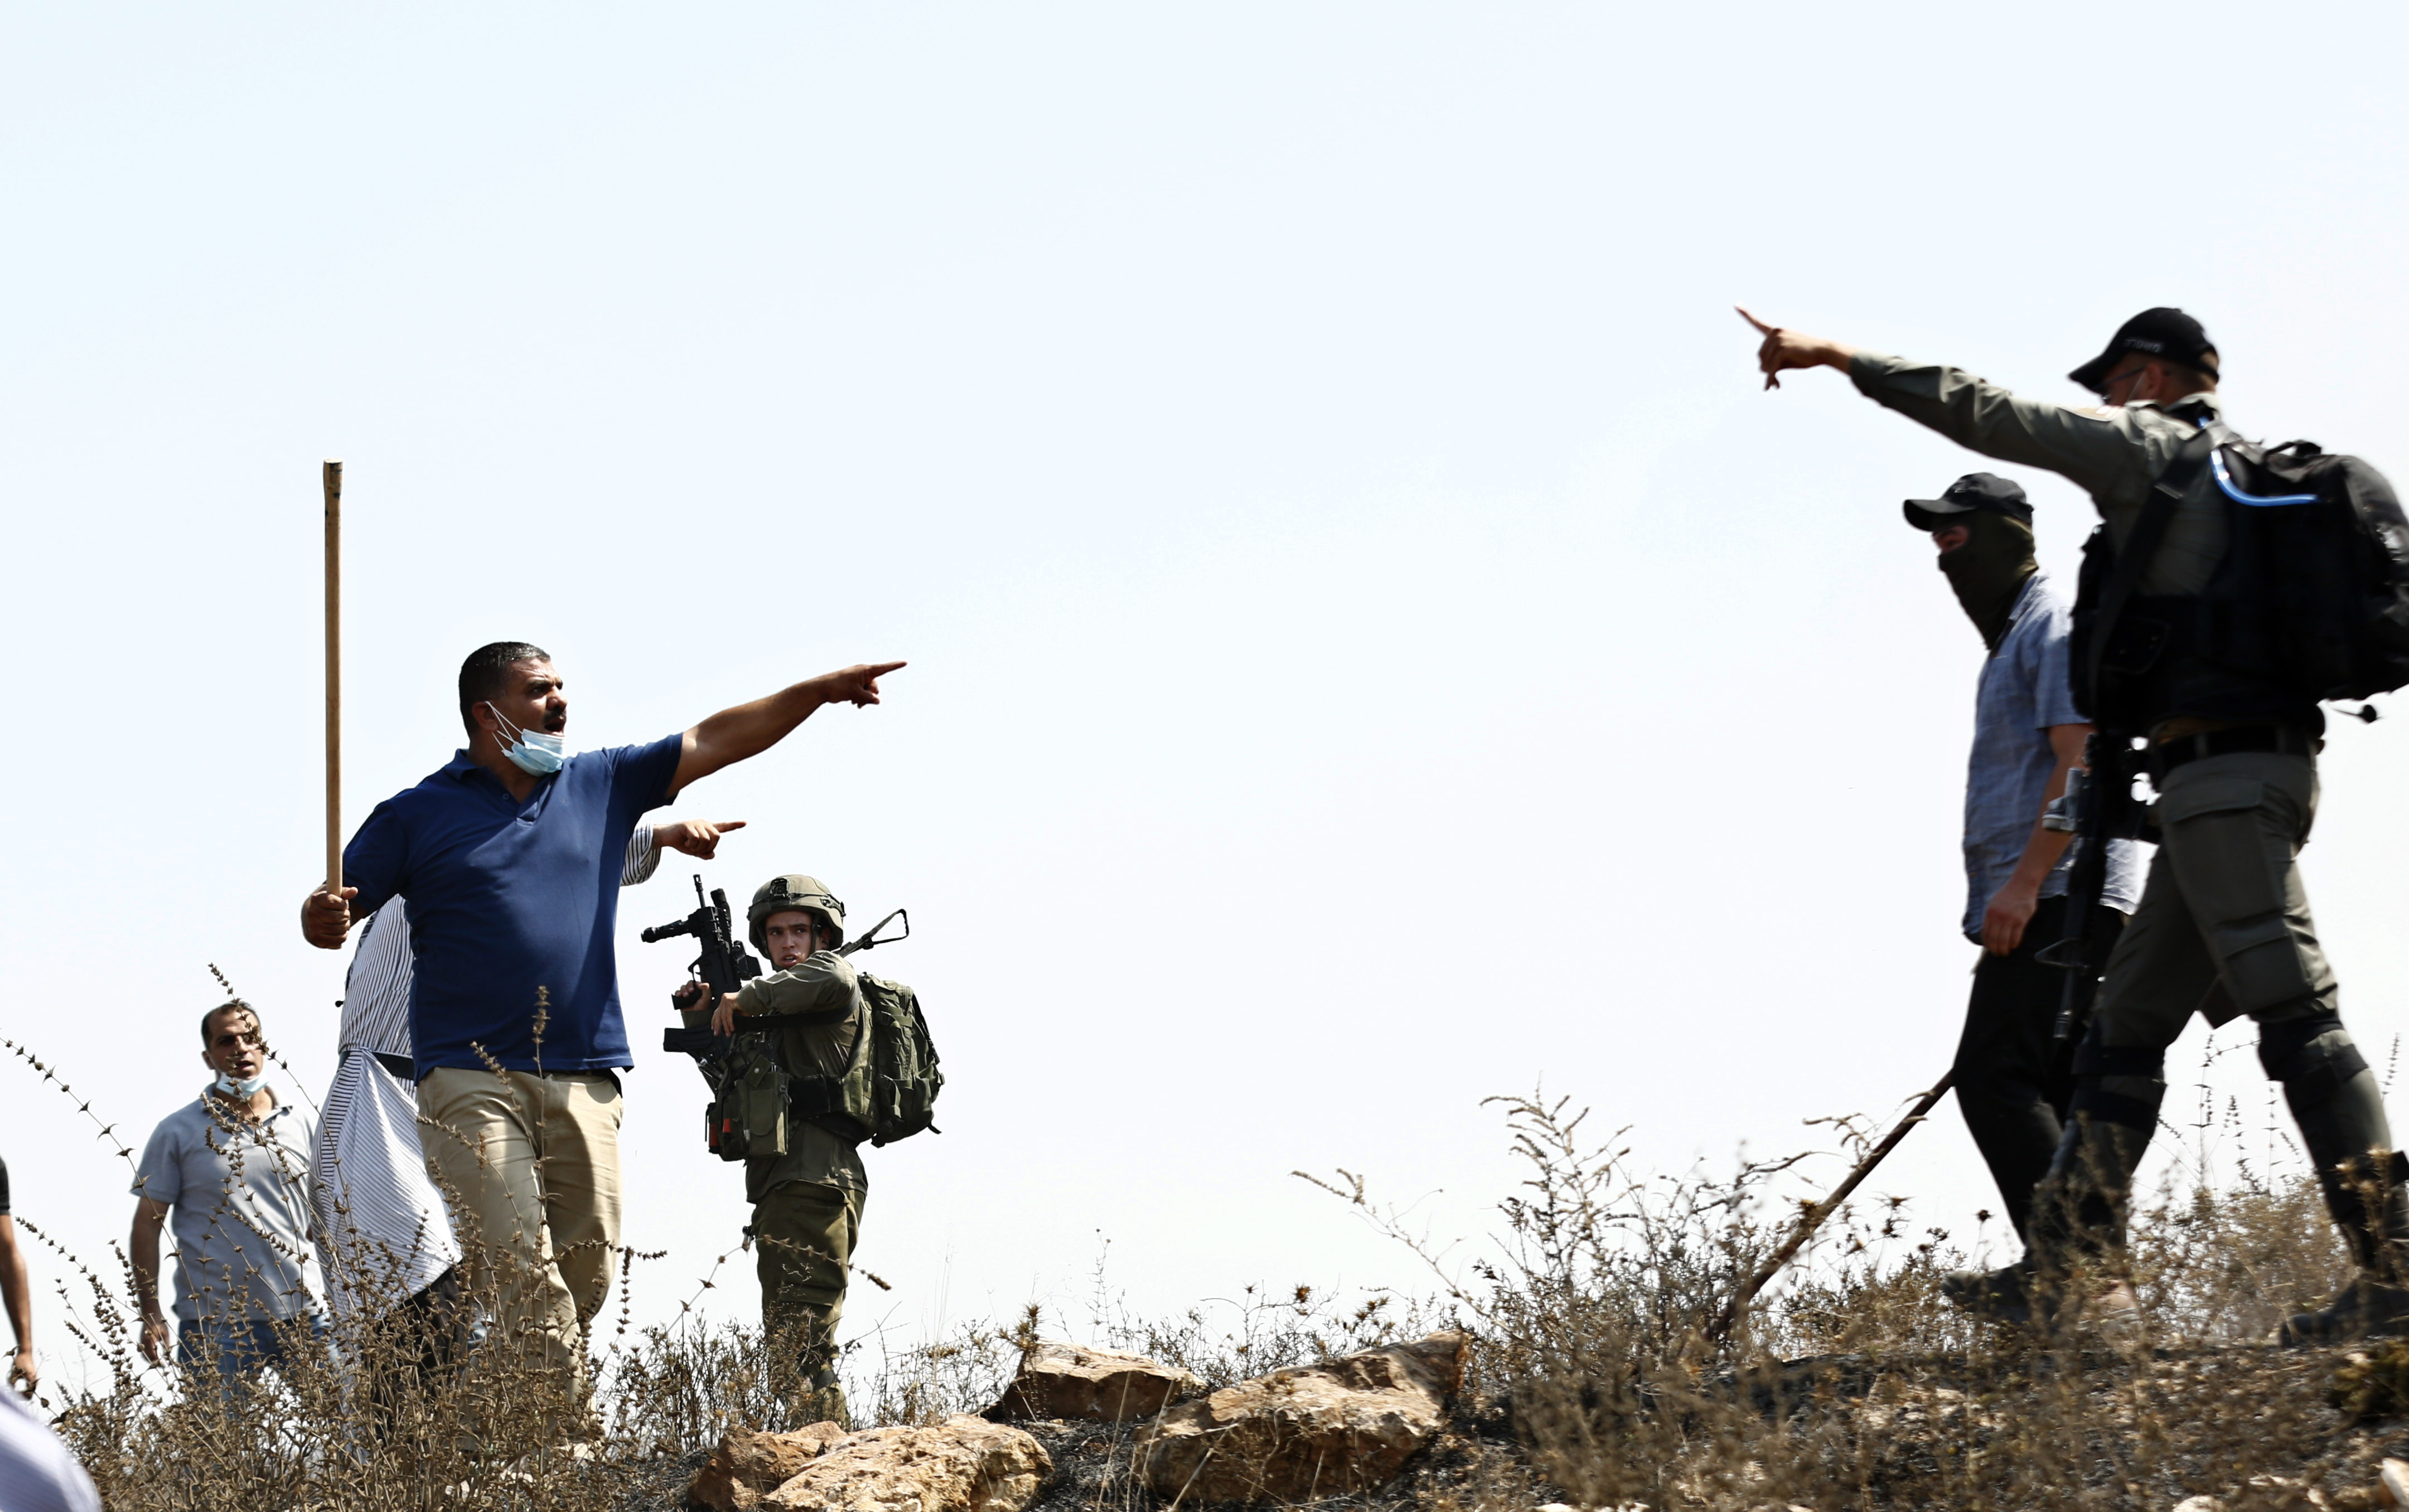 مواطنون فلسطينيون يتصدون لهجوم المستوطنين الصهاينة شرق قلقيلية